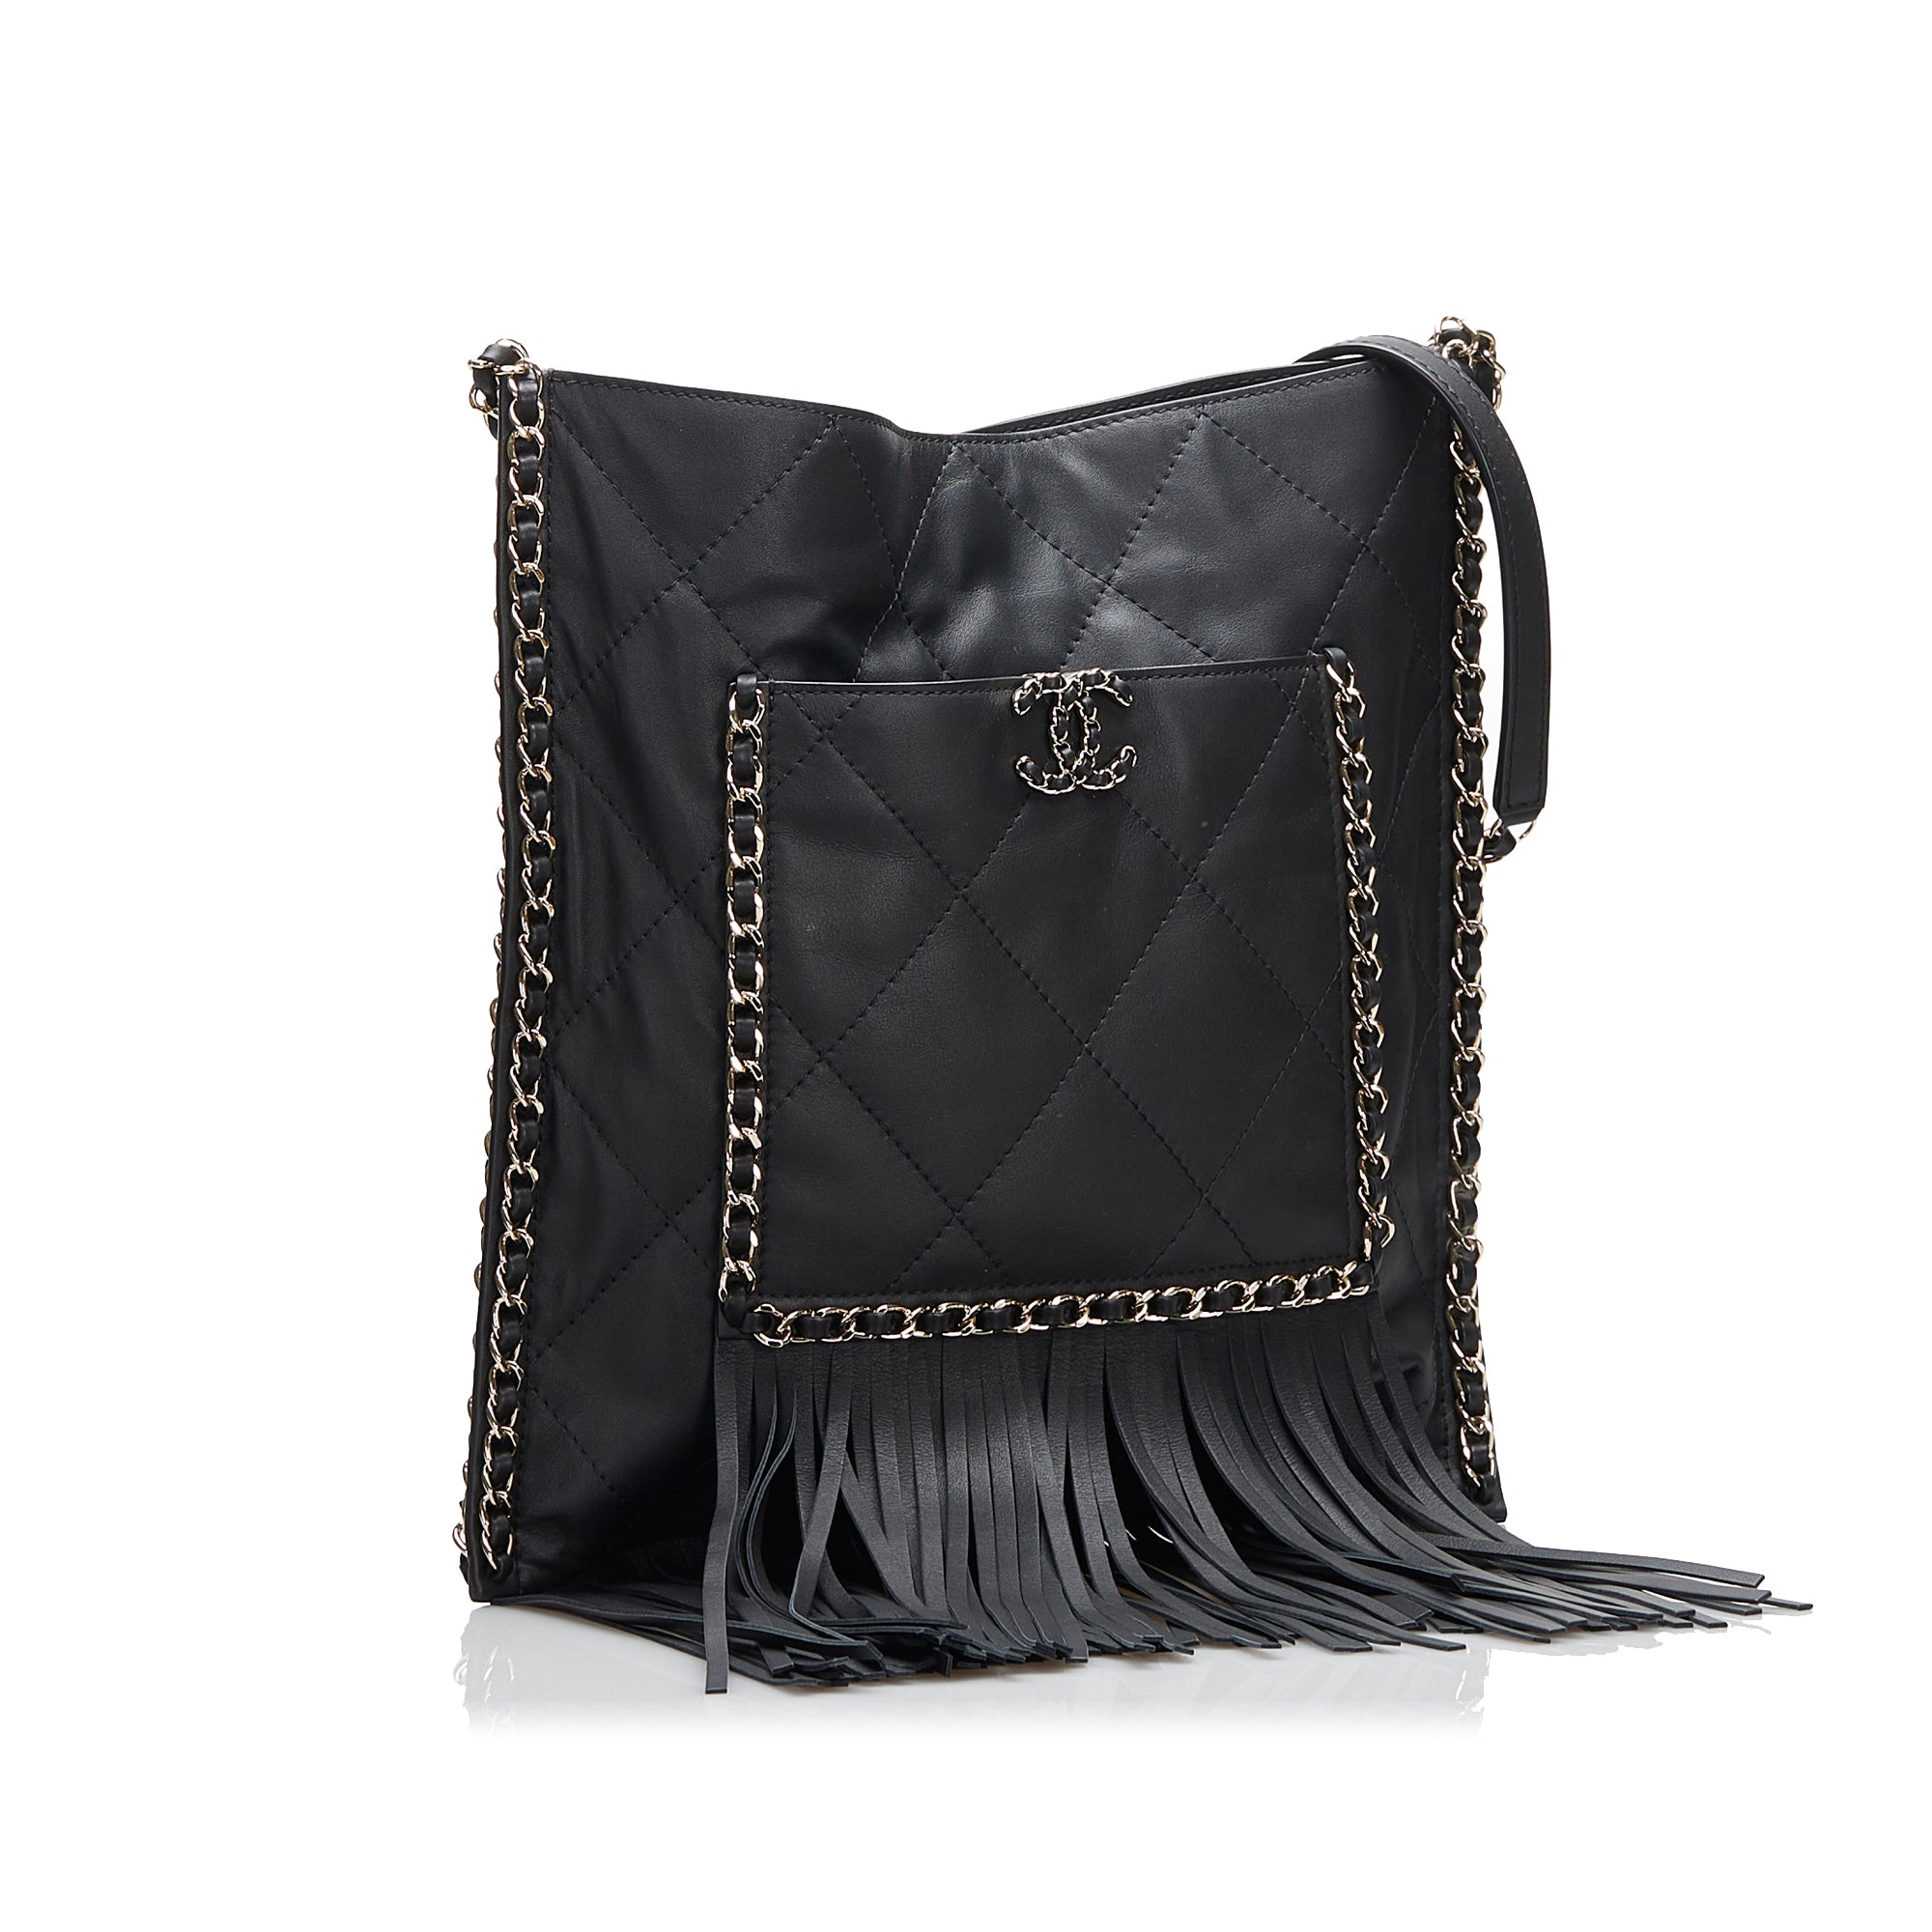 Chanel Pre-owned 1995 V-Stitch Mini Shoulder Bag - Black